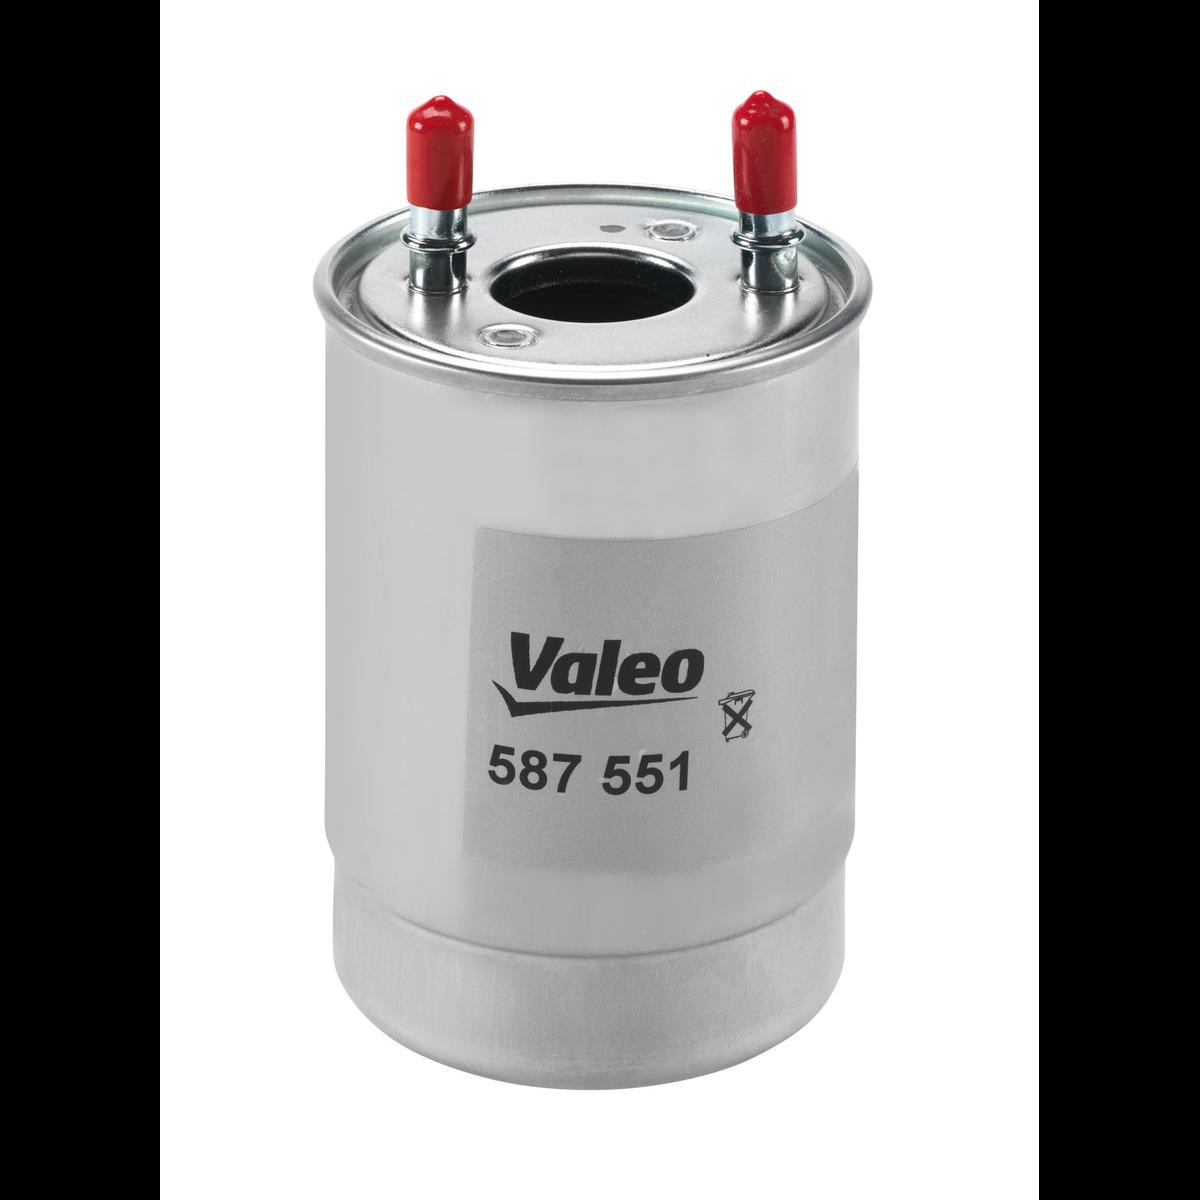 VALEO Kraftstofffilter RENAULT 587551 164009384R,7701478821,8201046788 Leitungsfilter,Spritfilter von VALEO